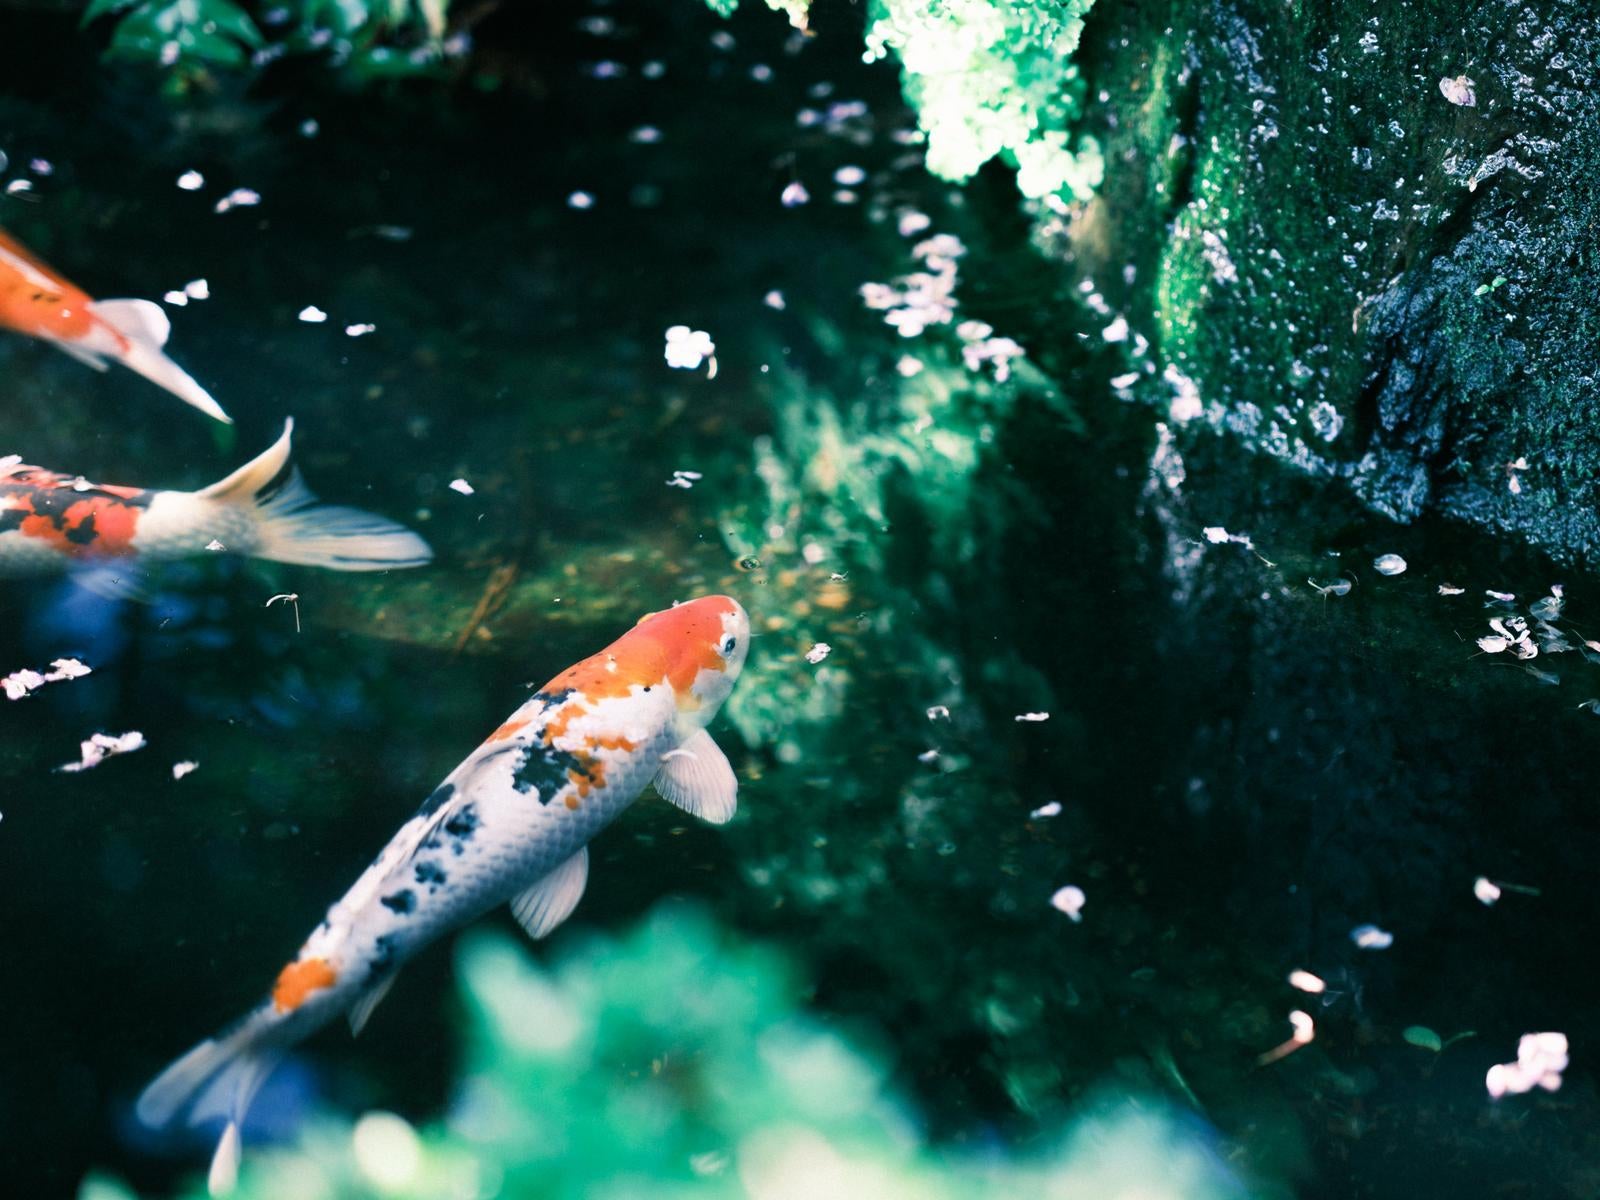 「日本庭園の鯉と池の風景」の写真